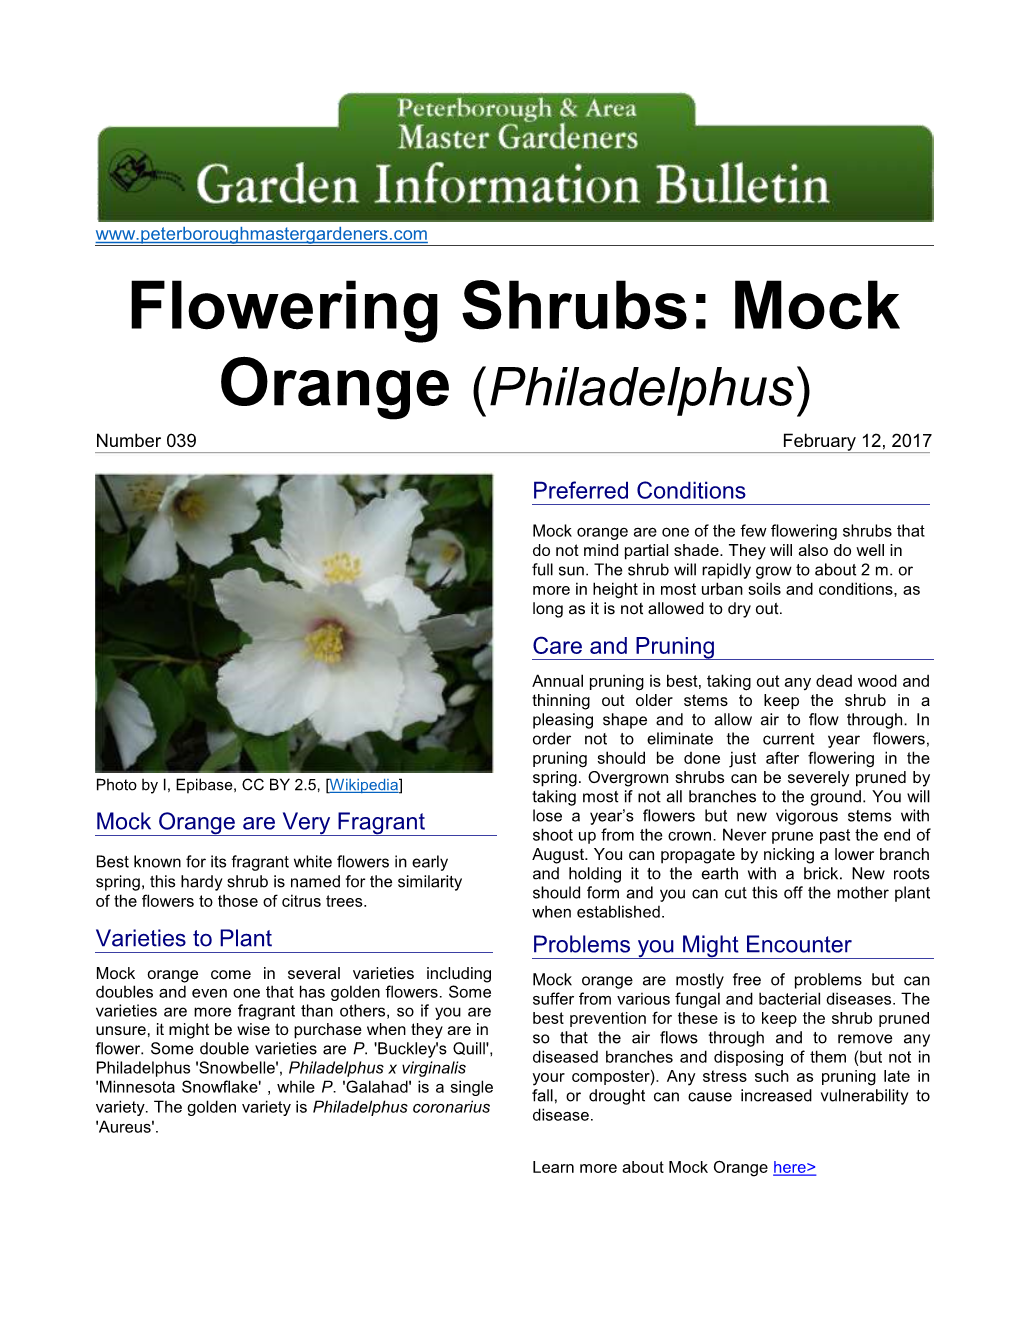 Flowering Shrubs: Mock Orange (Philadelphus)